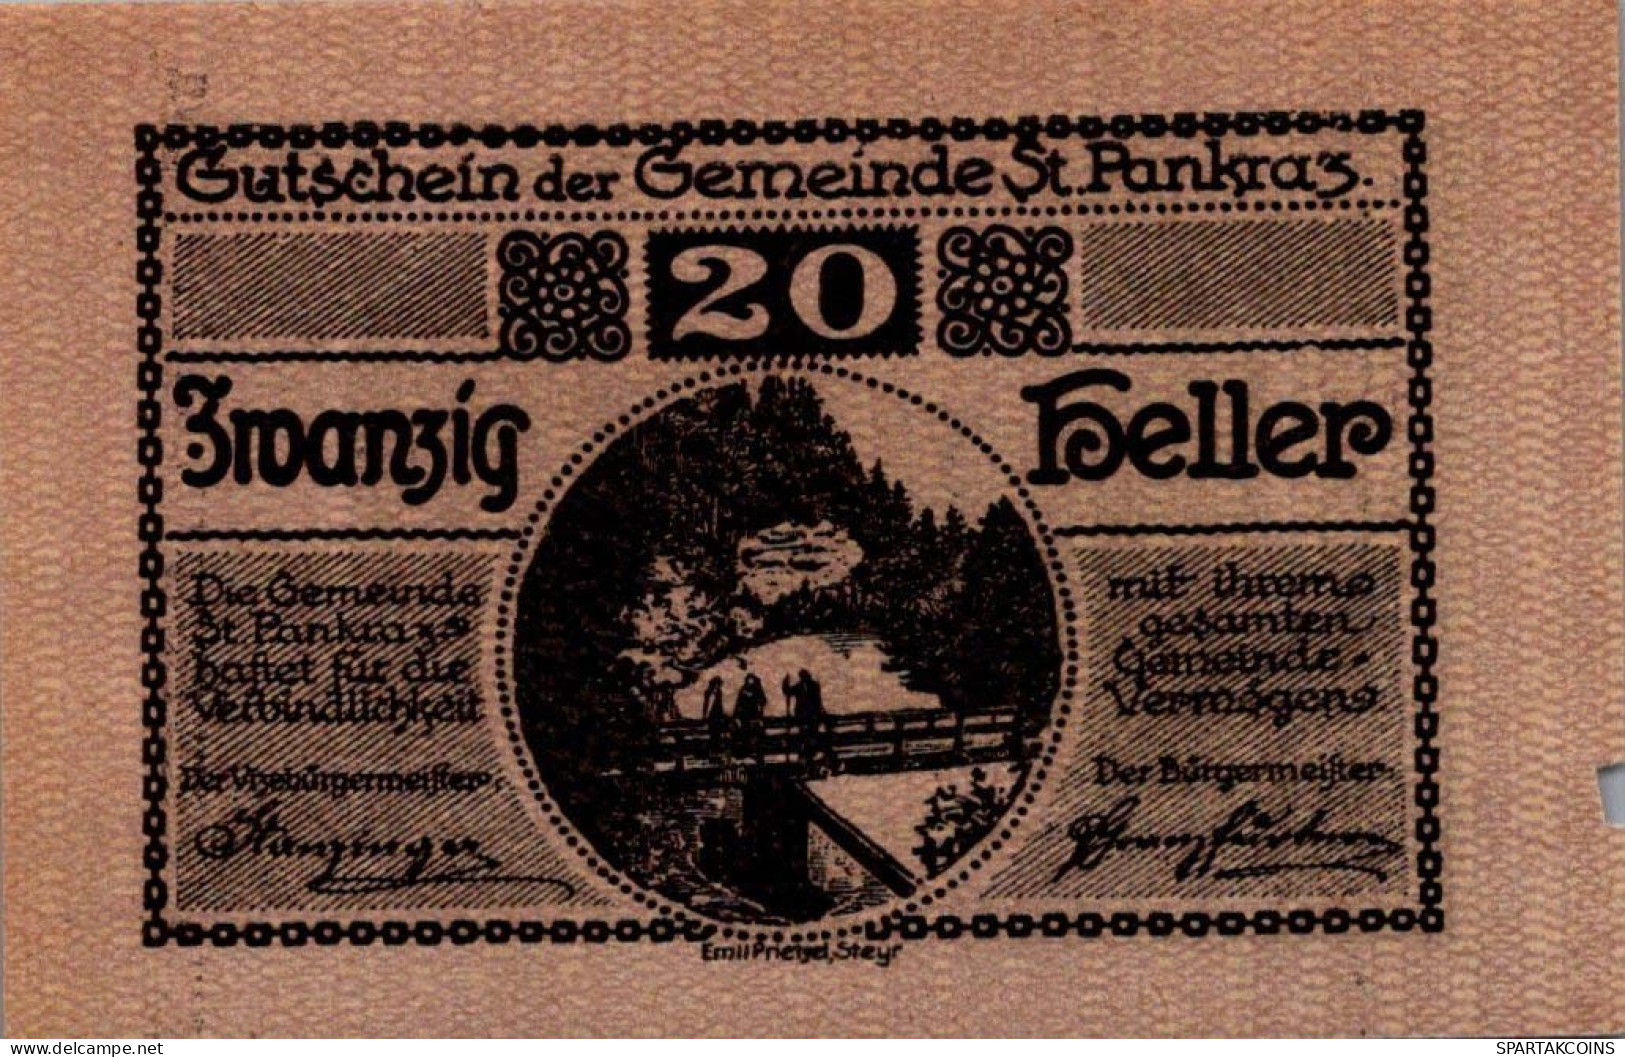 20 HELLER 1920 Stadt SANKT PANKRAZ Oberösterreich Österreich Notgeld #PE818 - [11] Local Banknote Issues